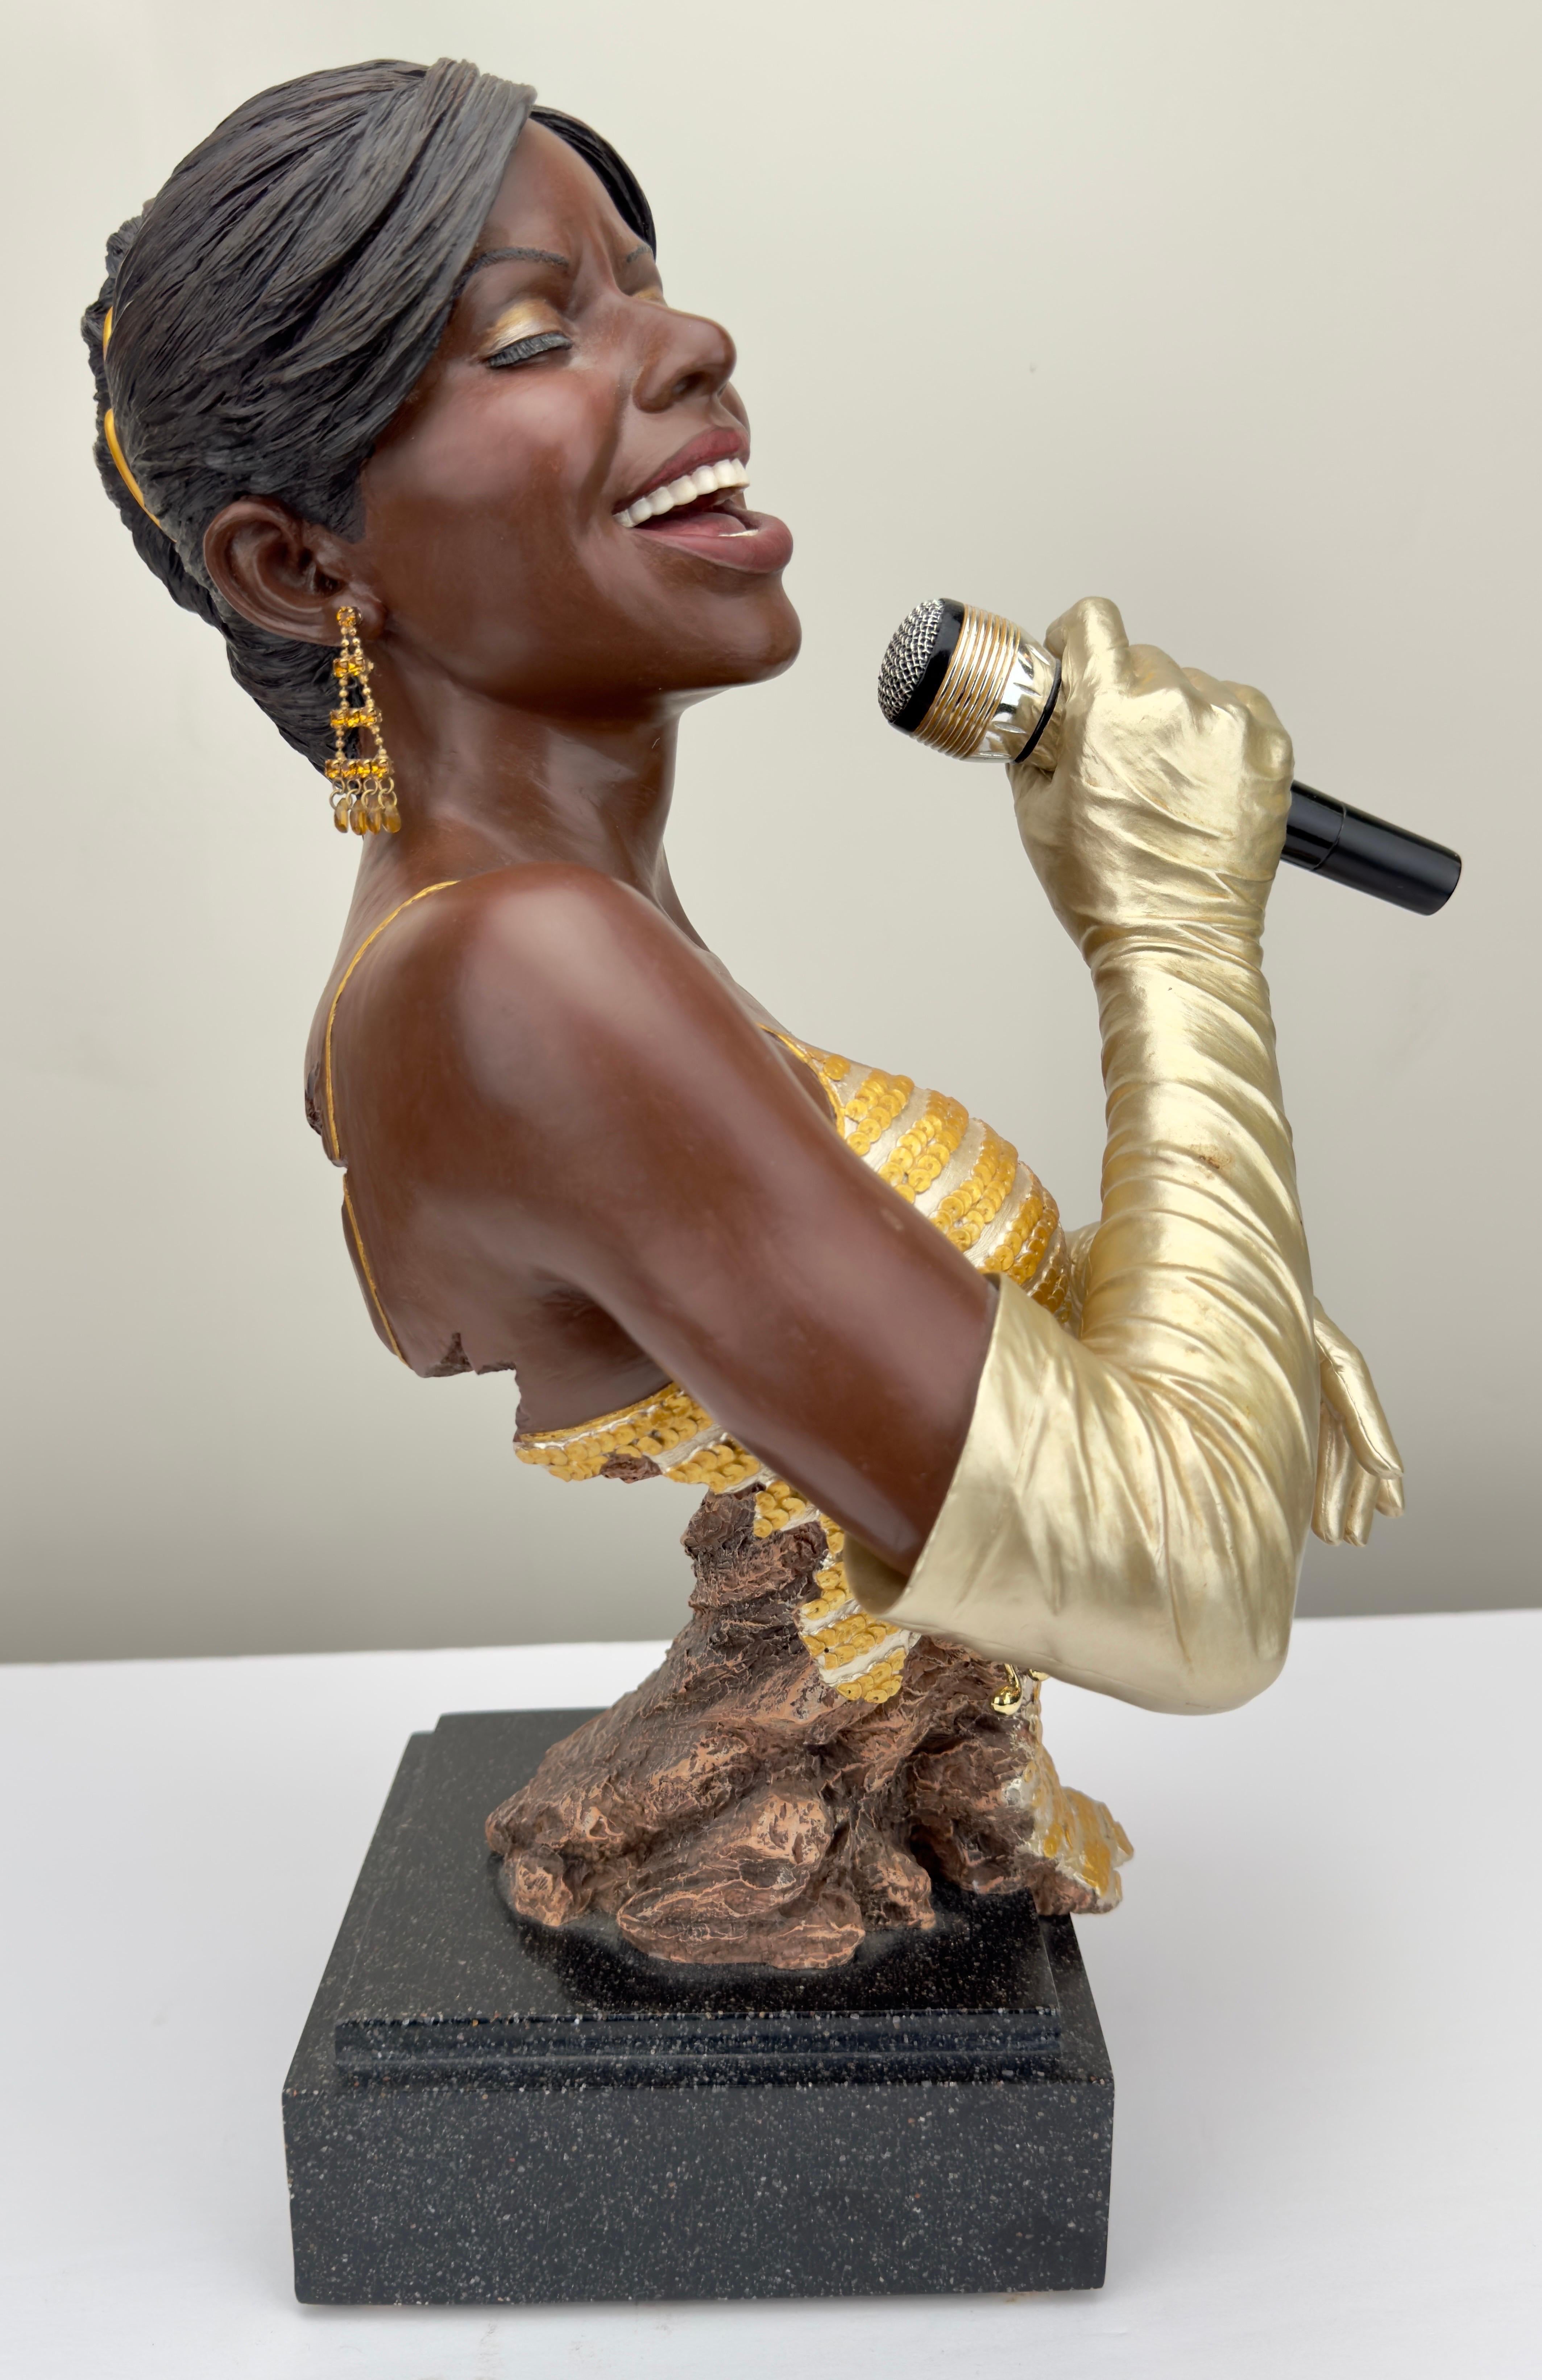 Une impressionnante sculpture de chanteuse de jazz en or, réalisée par Willitts Designs International et Shen Lung. La sculpture est peinte à froid et réalisée en résine coulée à la main. La chanteuse porte des gants en or, une robe en or et des